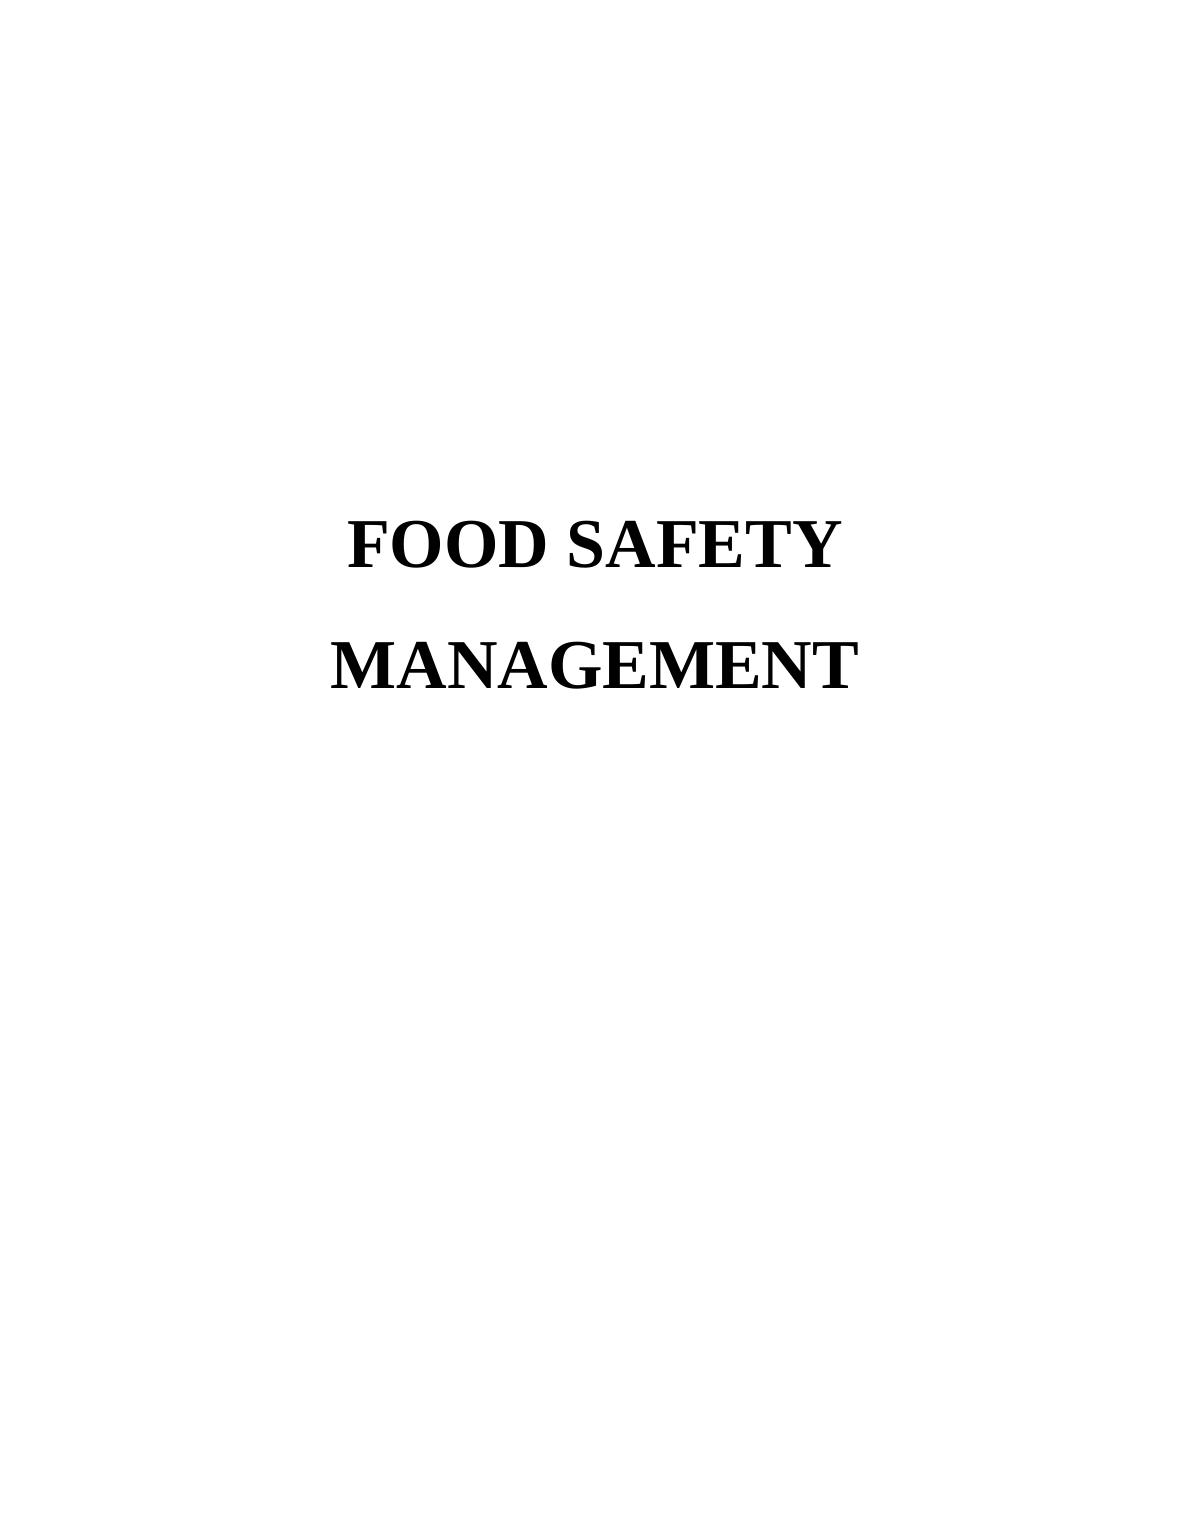 Food Safety Management System - PDF_1